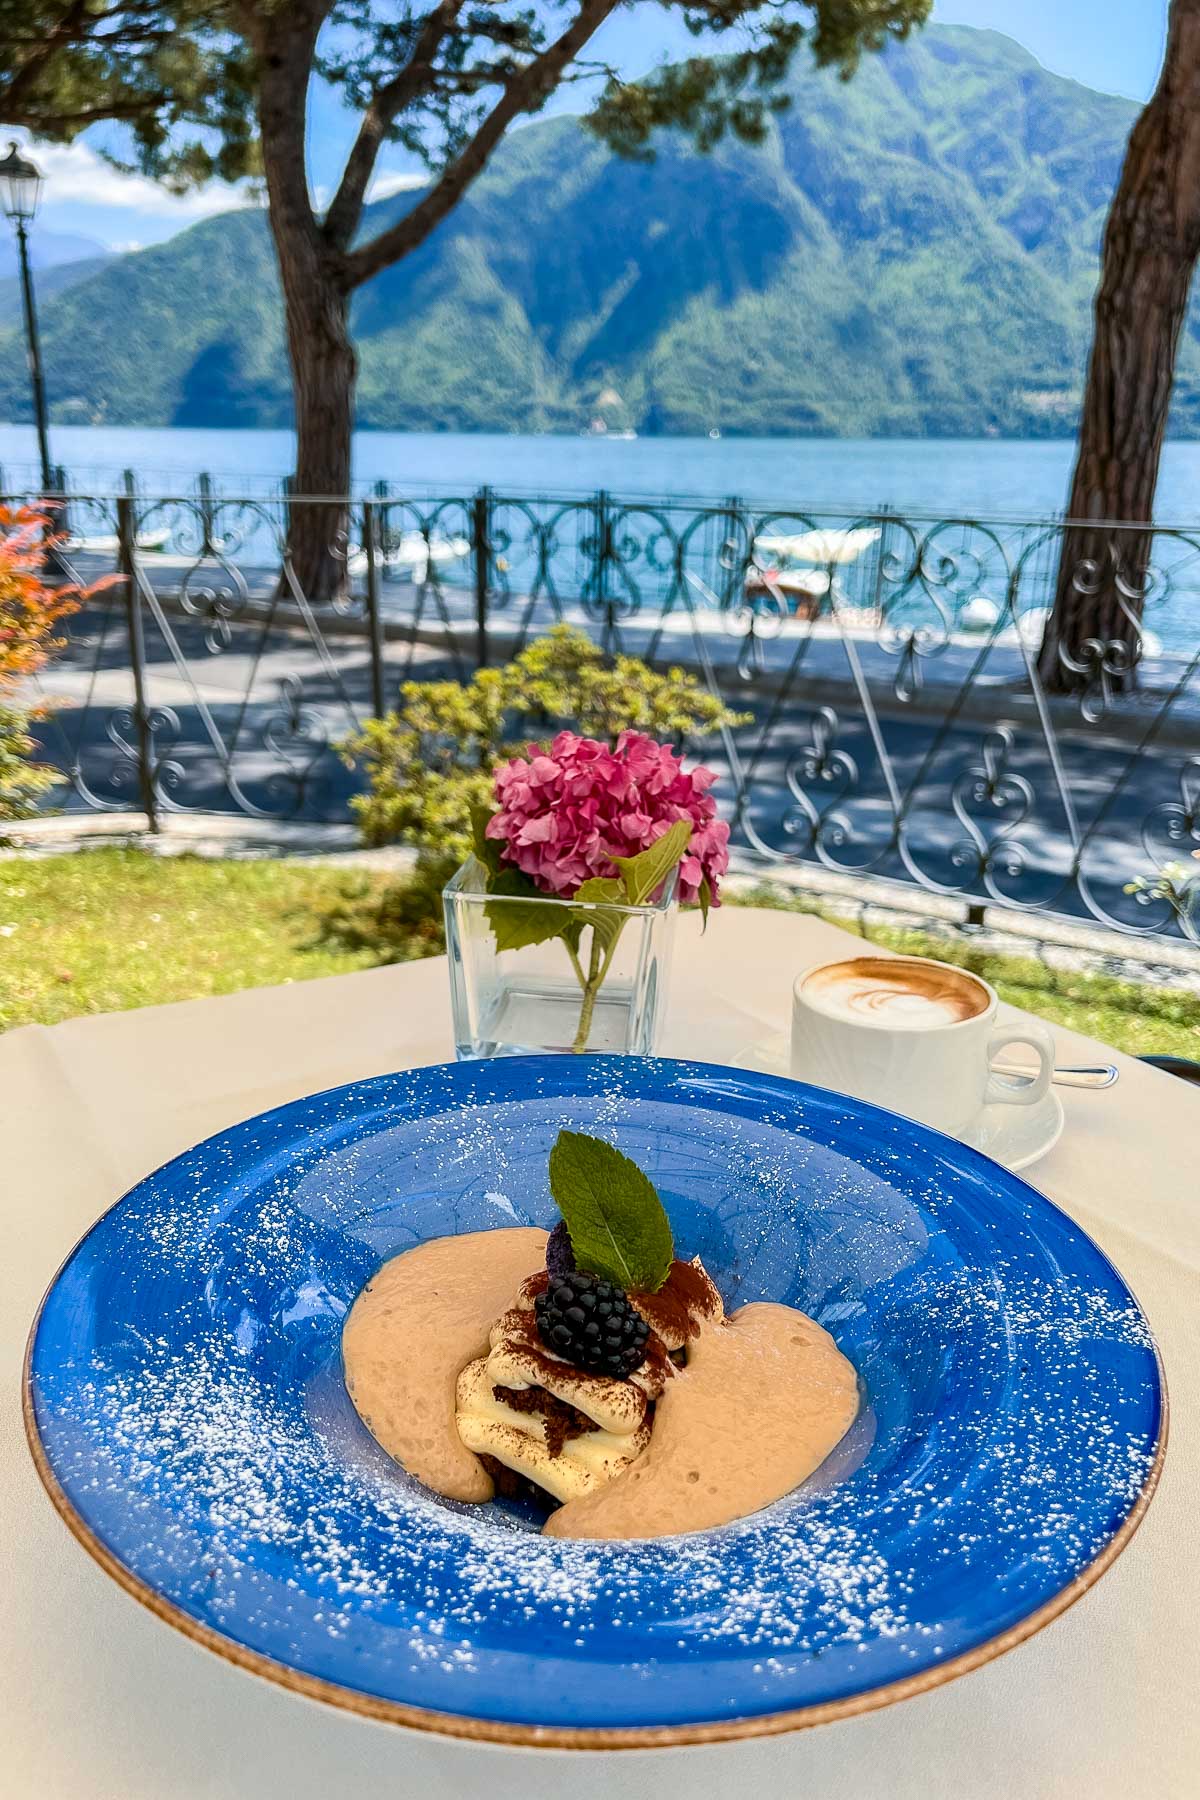 Lunch at Ristorante Giglio, Lenno, Lake Como